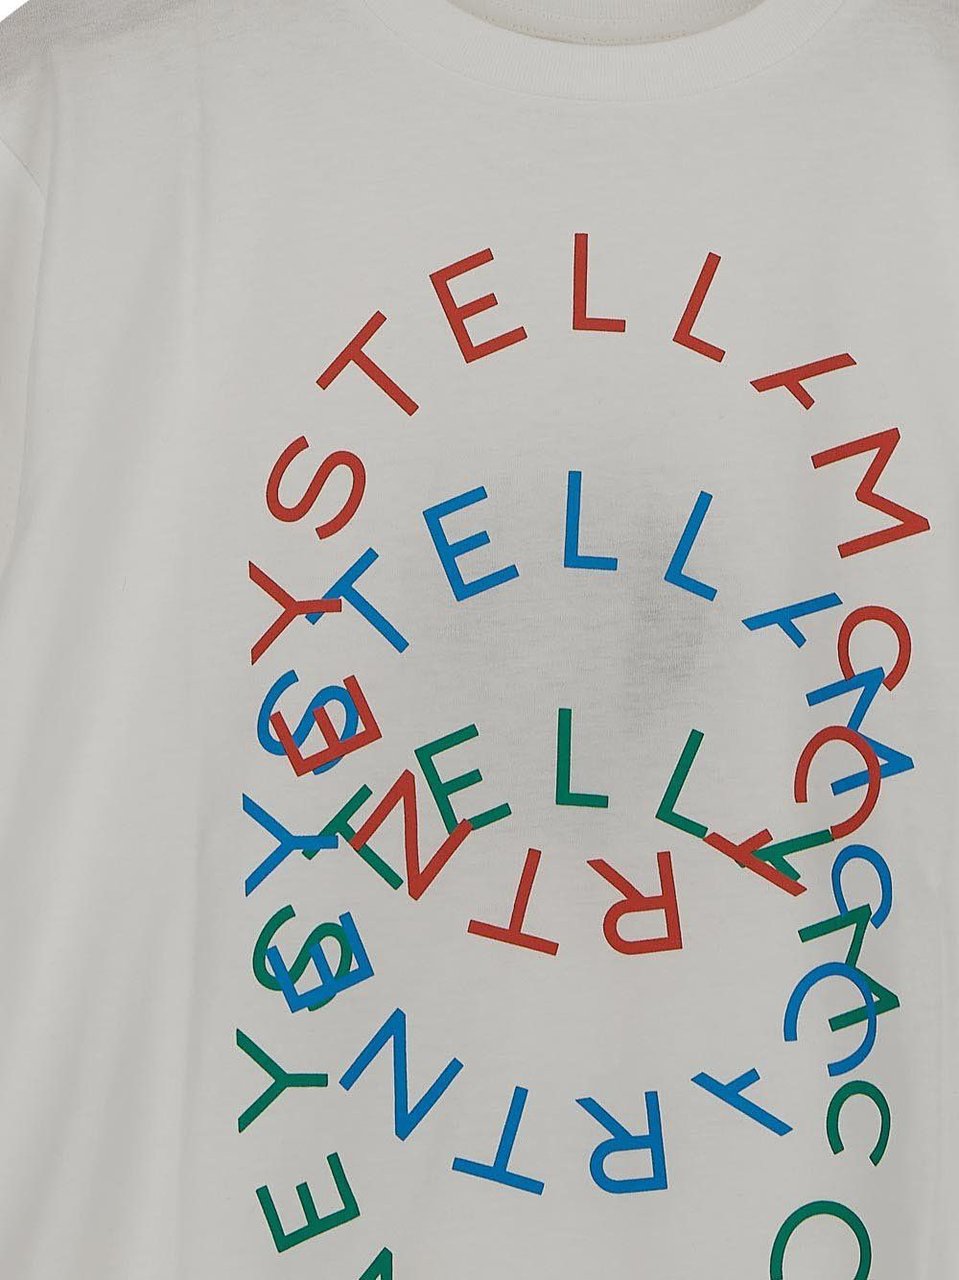 Stella McCartney Superimposed Circular Logos T-Shirt Wit